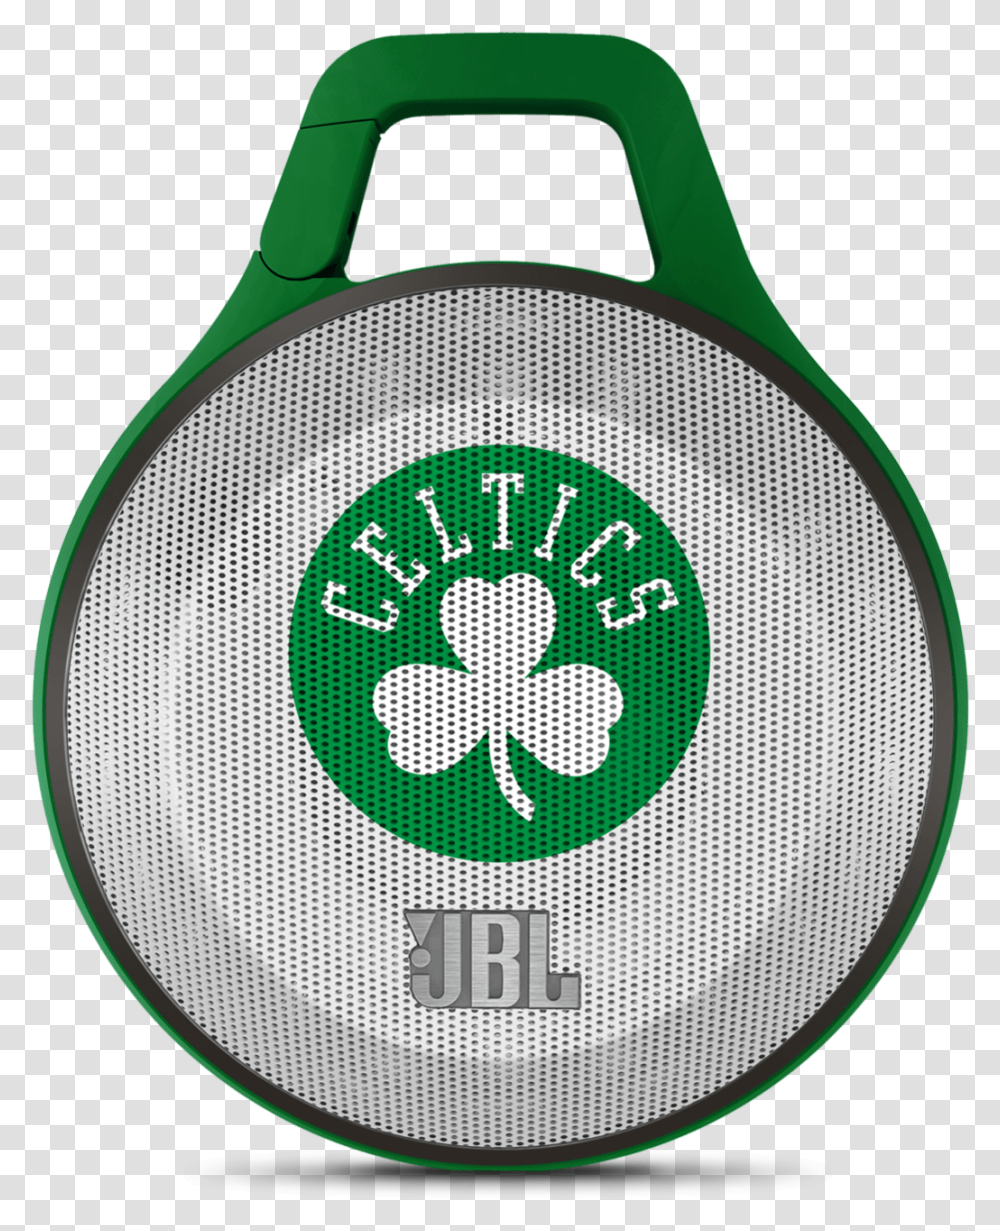 Jbl Clip Nba Edition Celtics Nba Teams Logos Boston Celtics, Bag, Symbol, Trademark, Purse Transparent Png